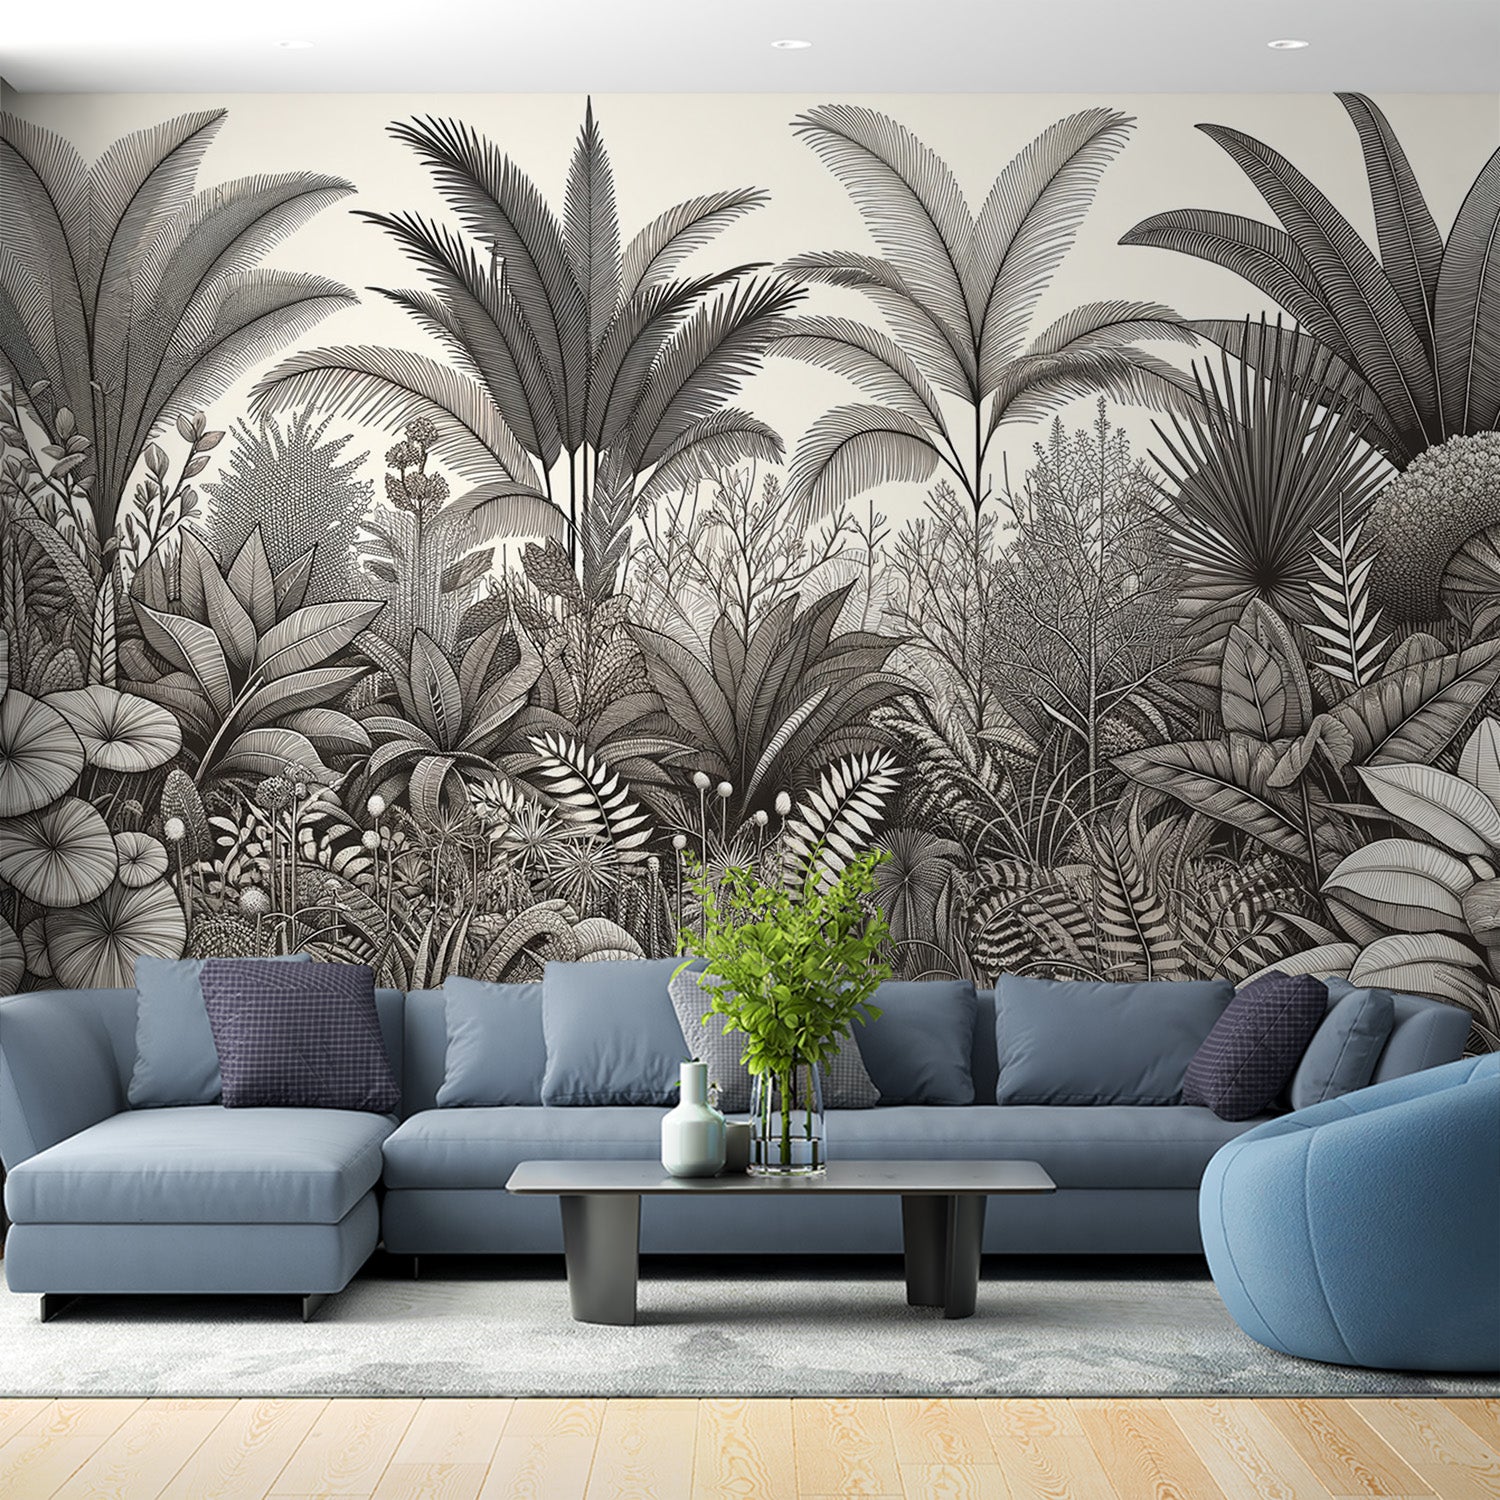  Papier peint tropical Diversité botanique en nuances de gris avec détails fins